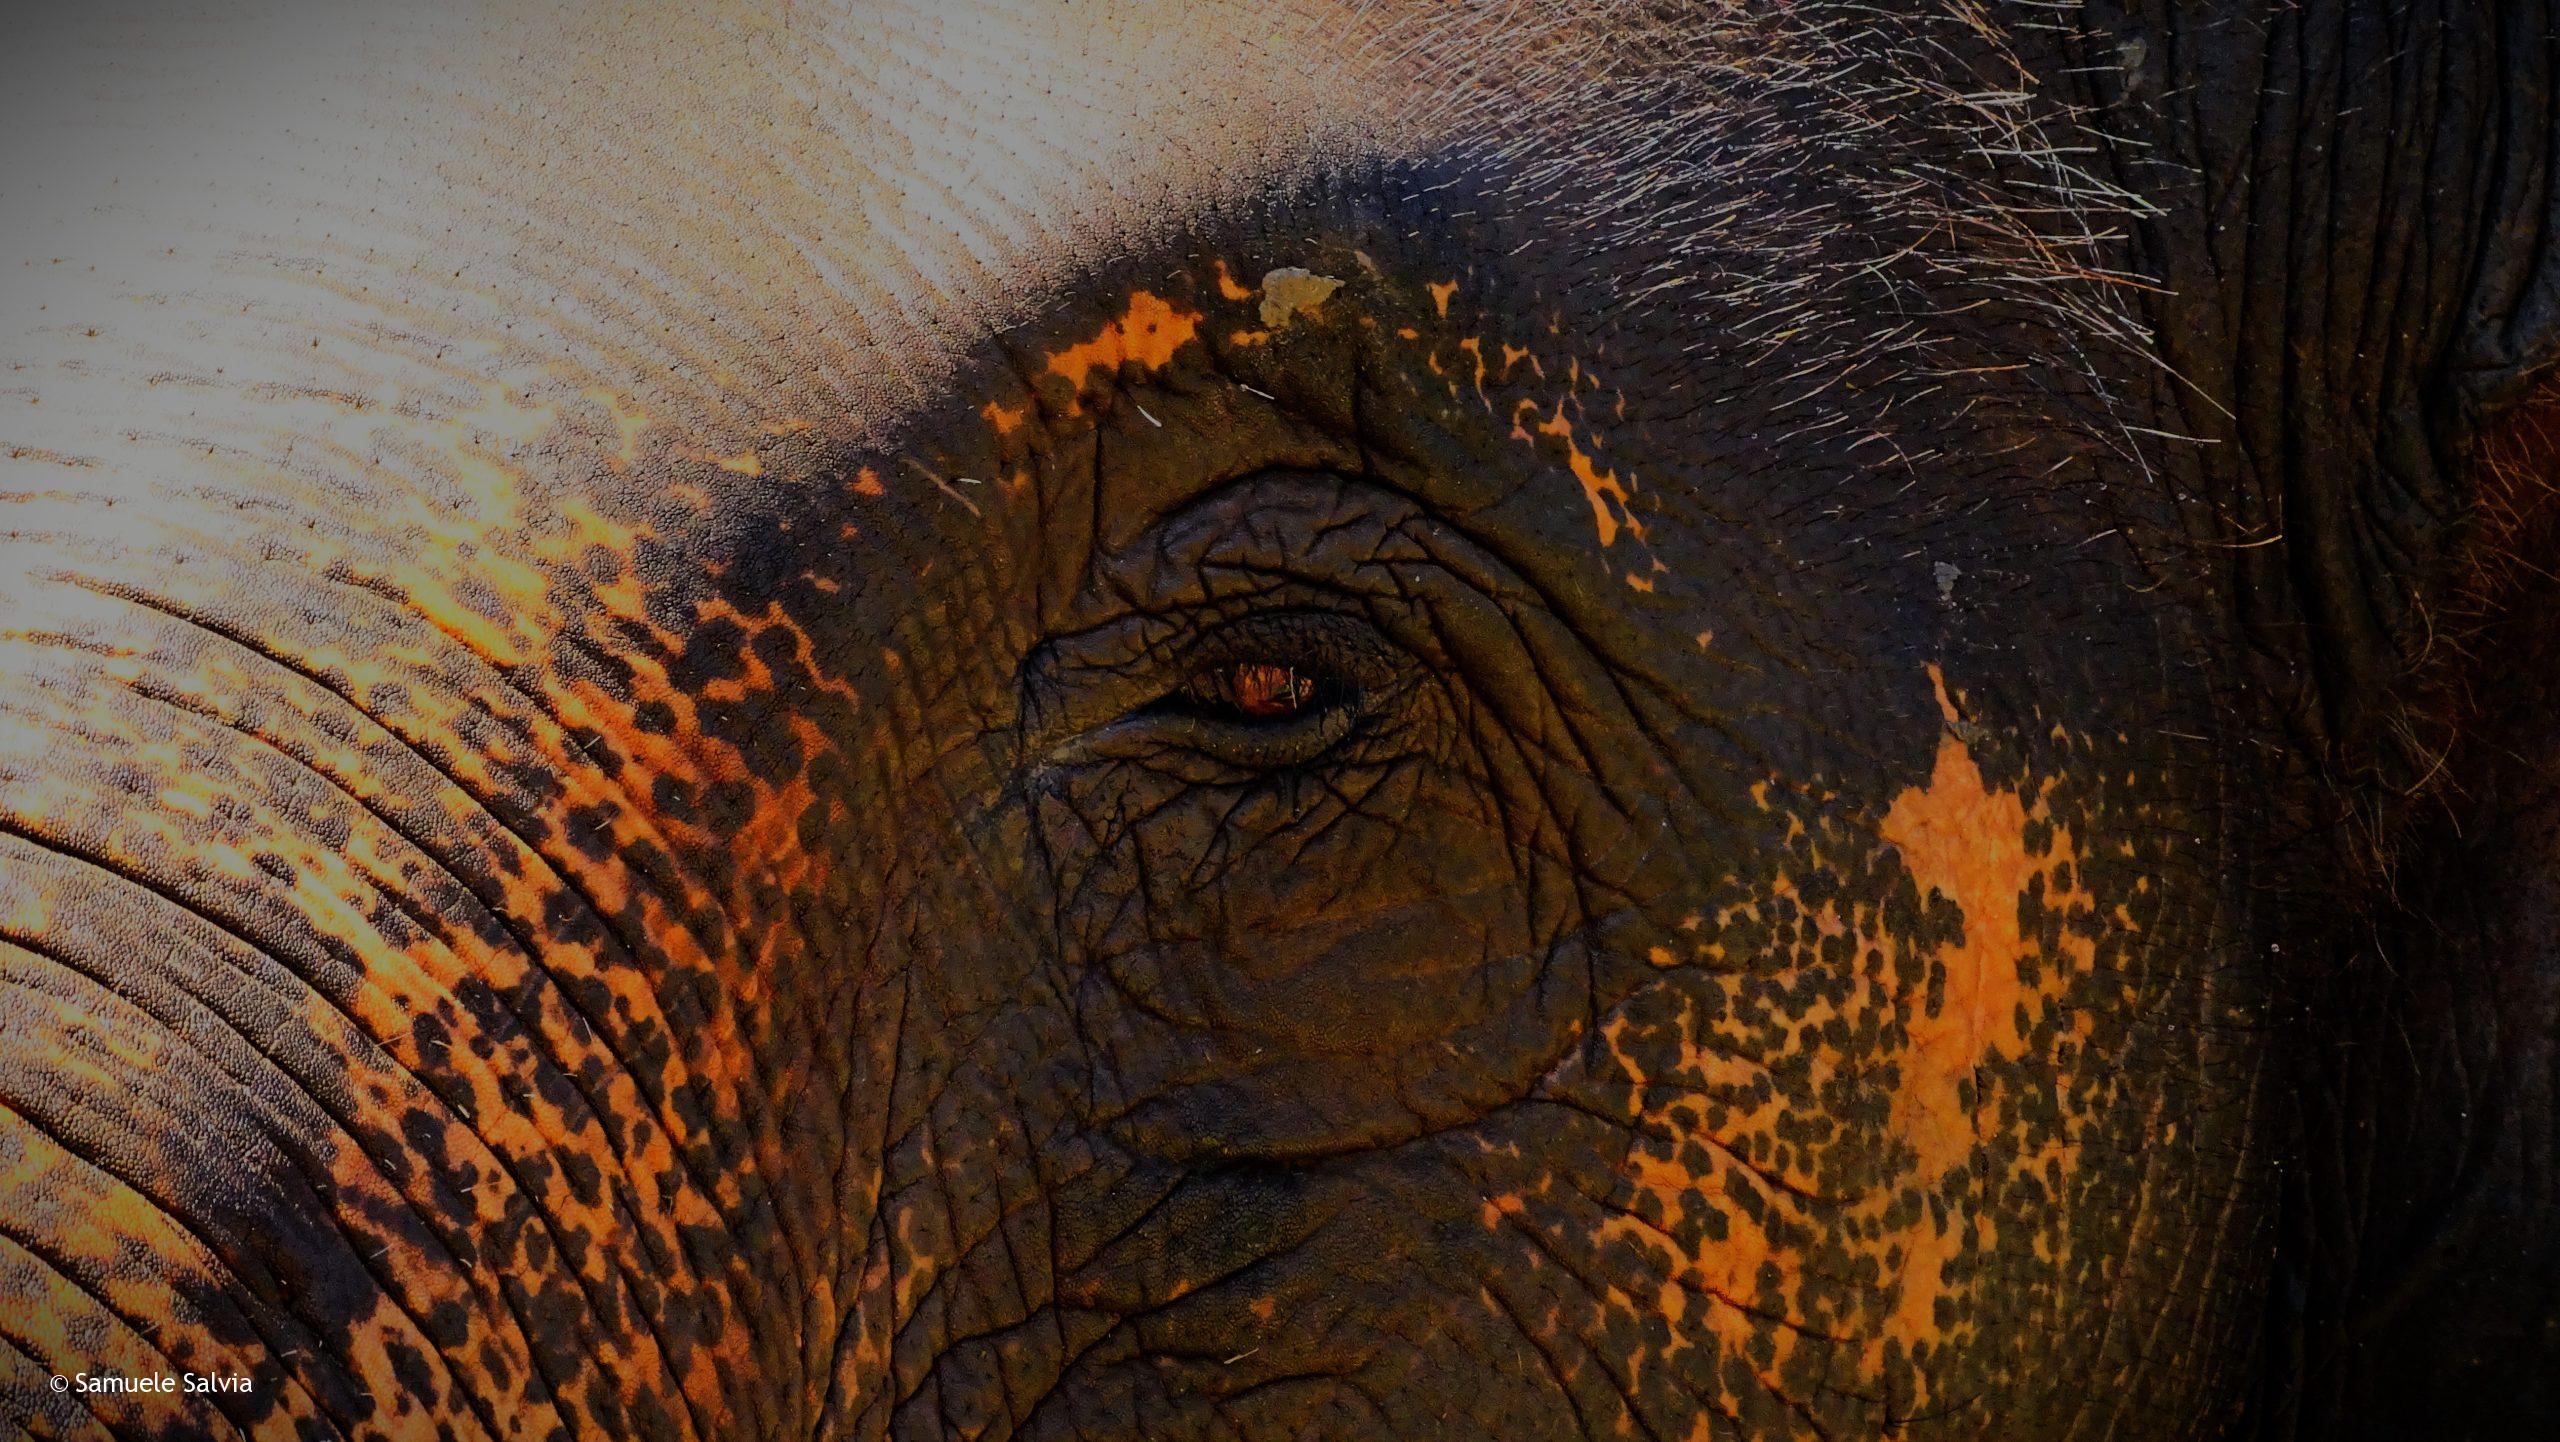 Dettaglio sull'occhio di un meraviglioso esemplare al santuario degli elefanti di Chiang Mai.